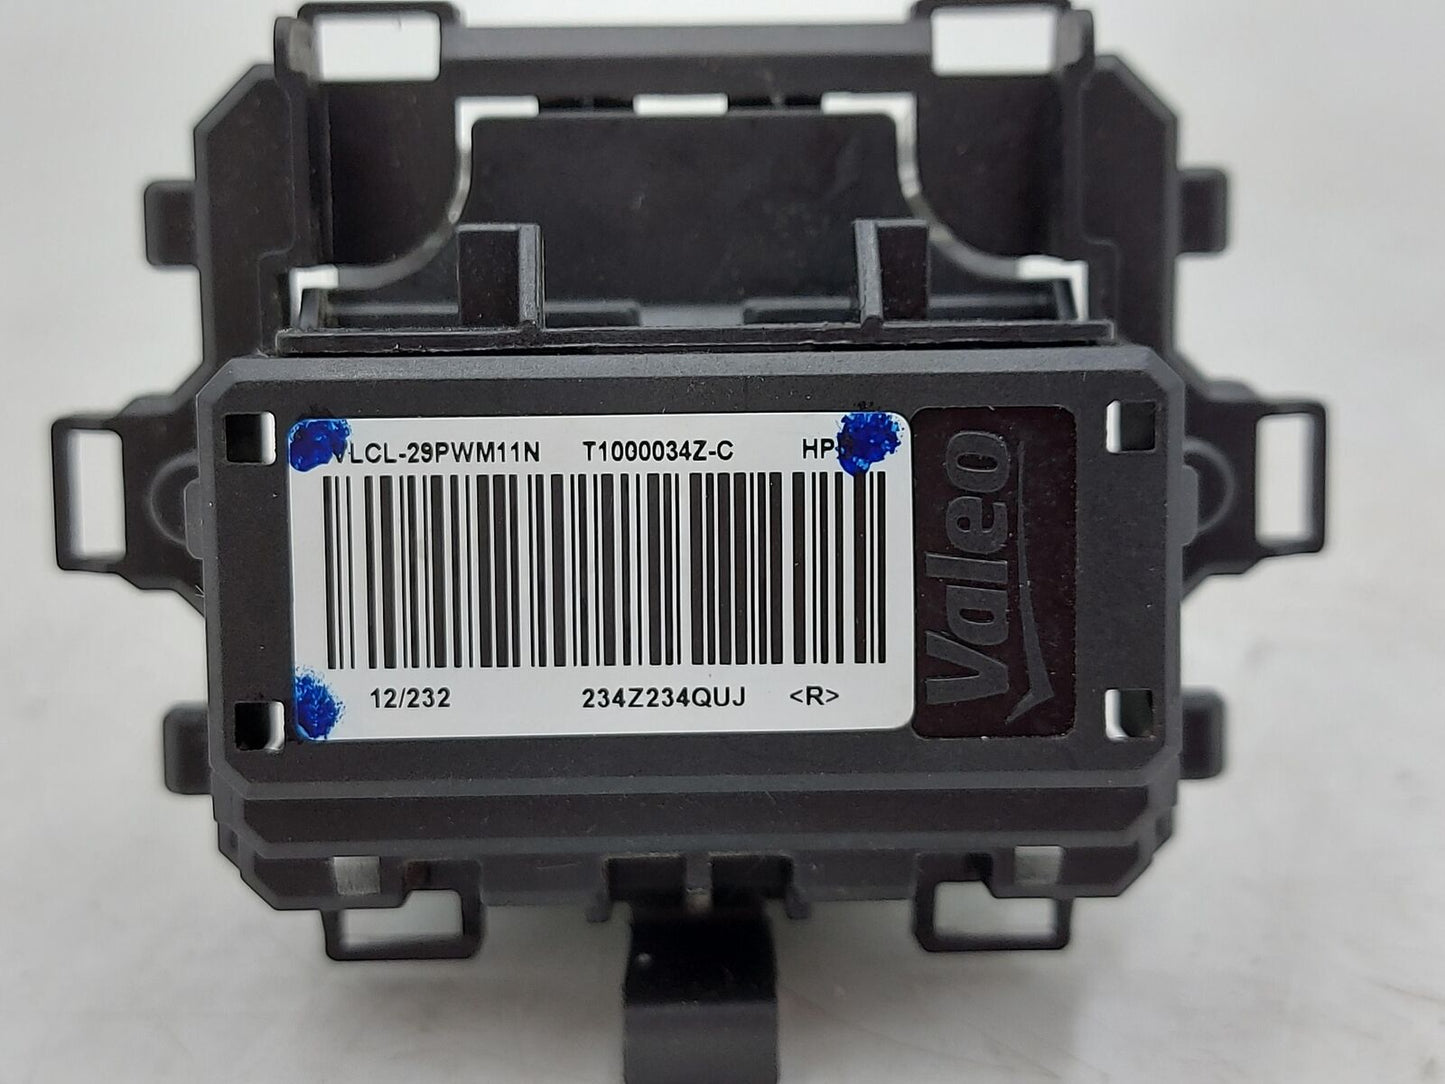 2013 Subaru Xv Crosstrek Blower Motor Resistor T1000034Z-C 234Z234QUJ